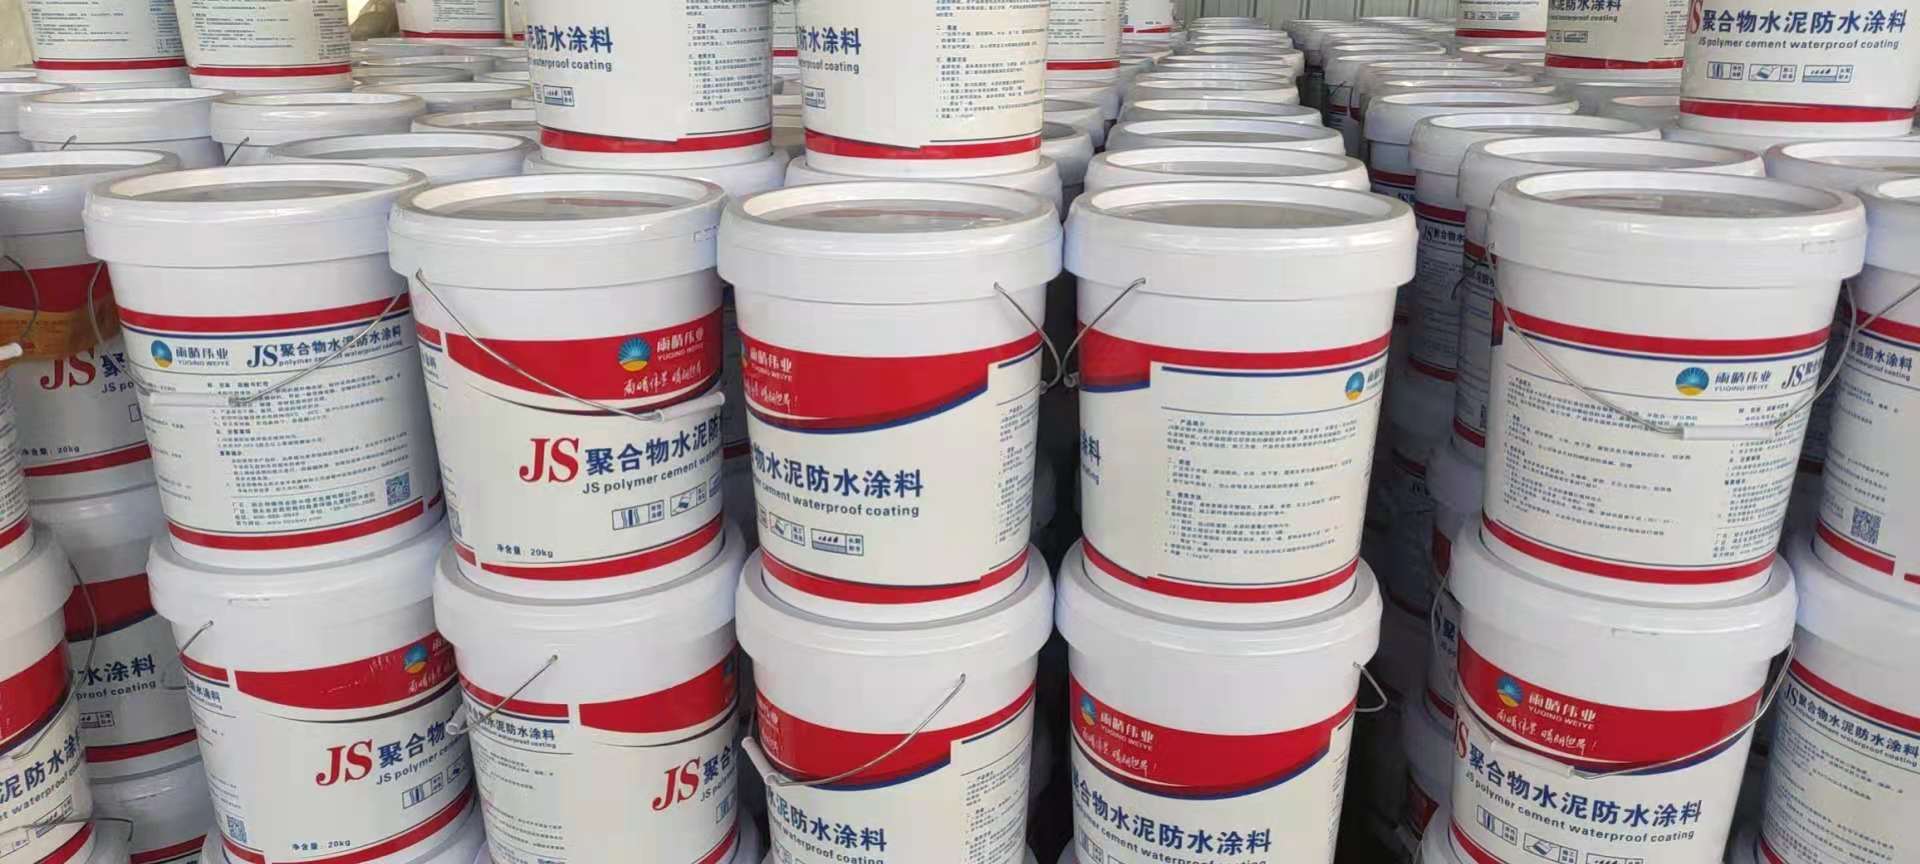 JS聚合物水泥基防水涂料生产厂家找雨晴防水地下室防水水池防水涂料